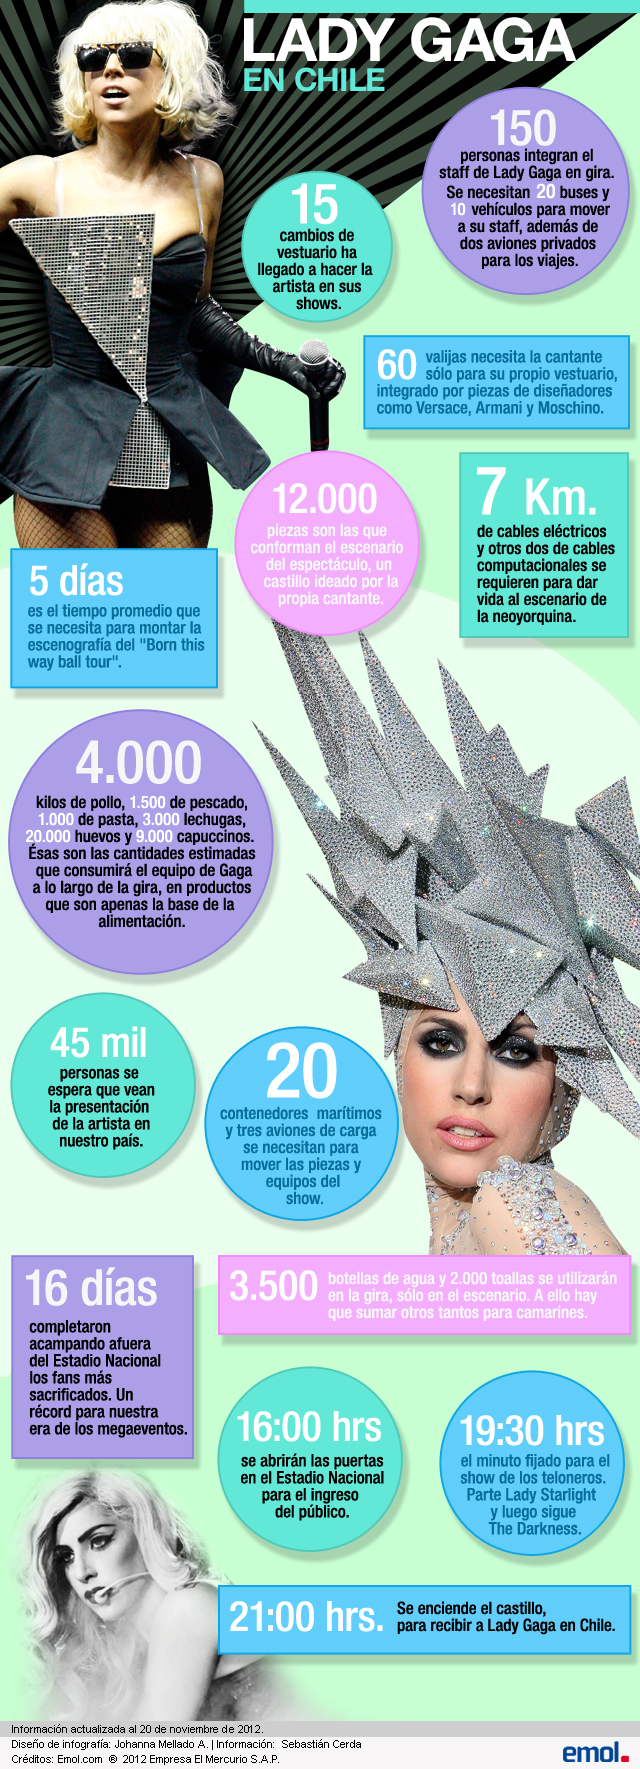 Los números de Lady Gaga y la monumental gira con que llega a Chile